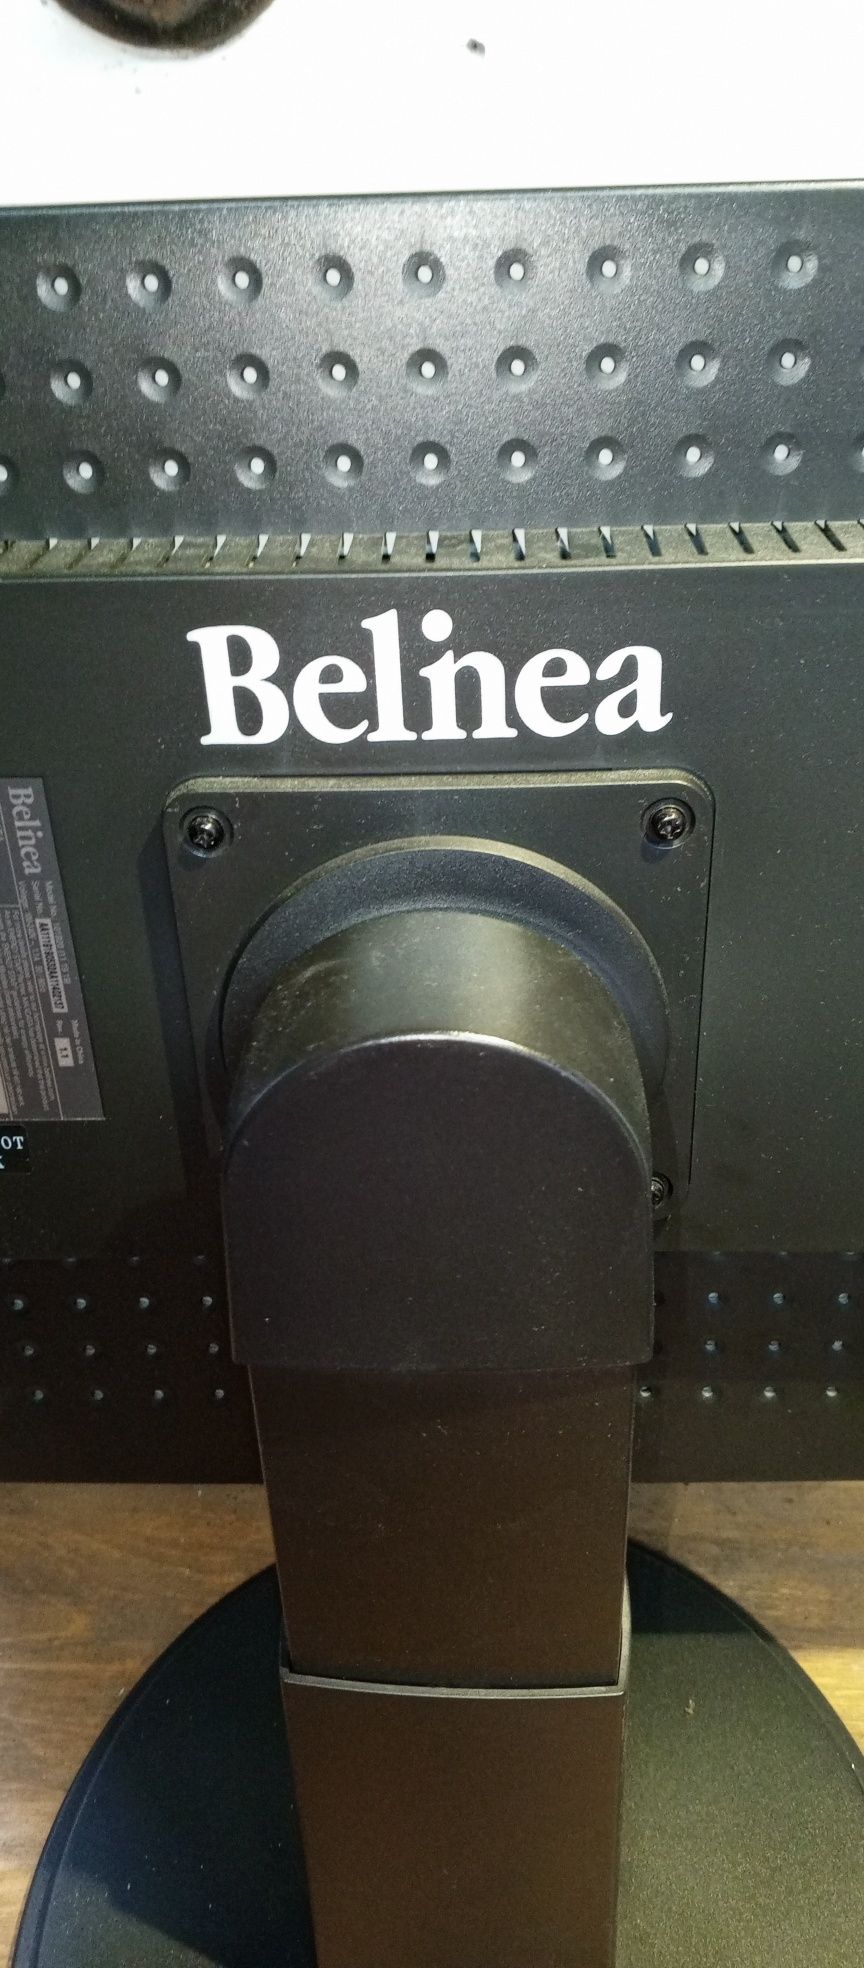 Monitor LCD Belinea 101919